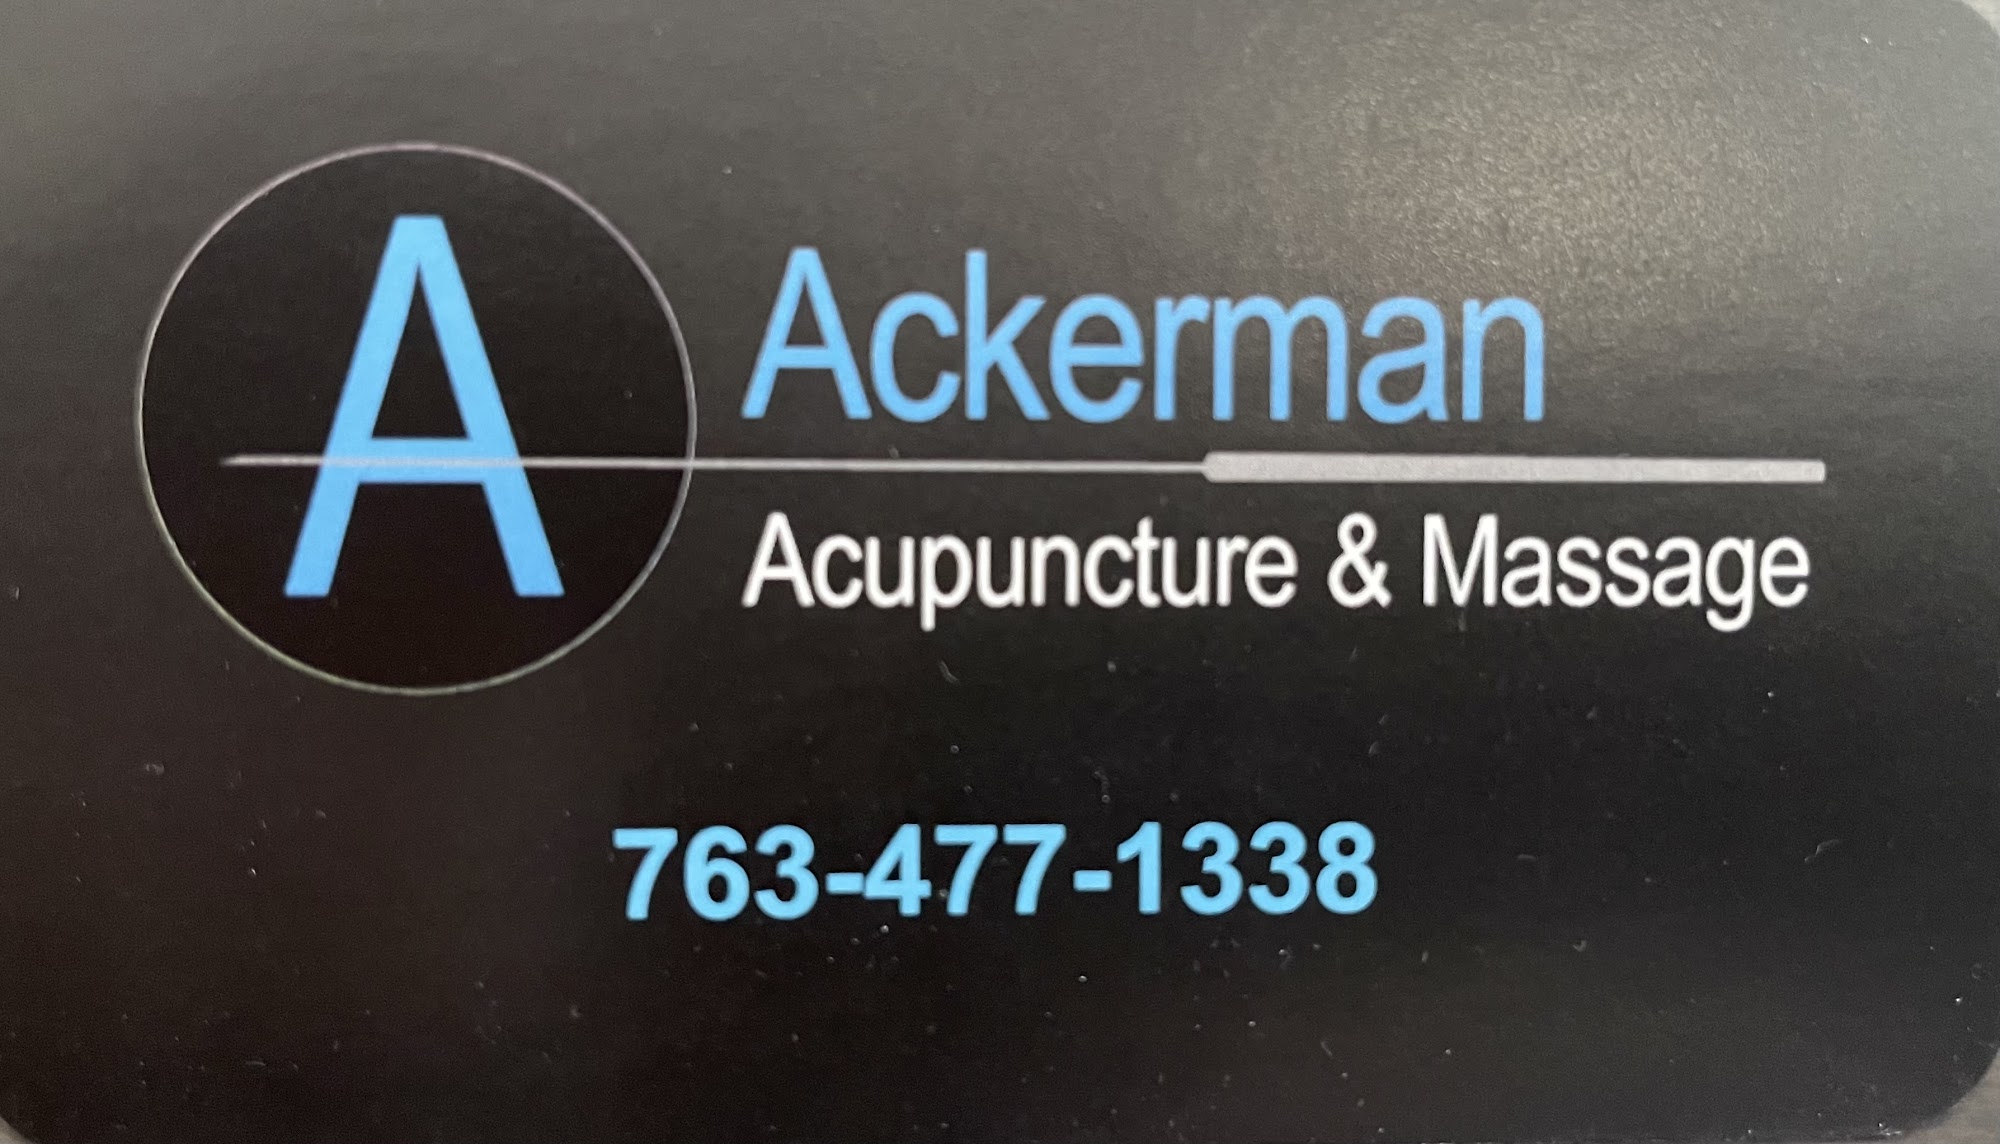 Ackerman Acupuncture & Massage